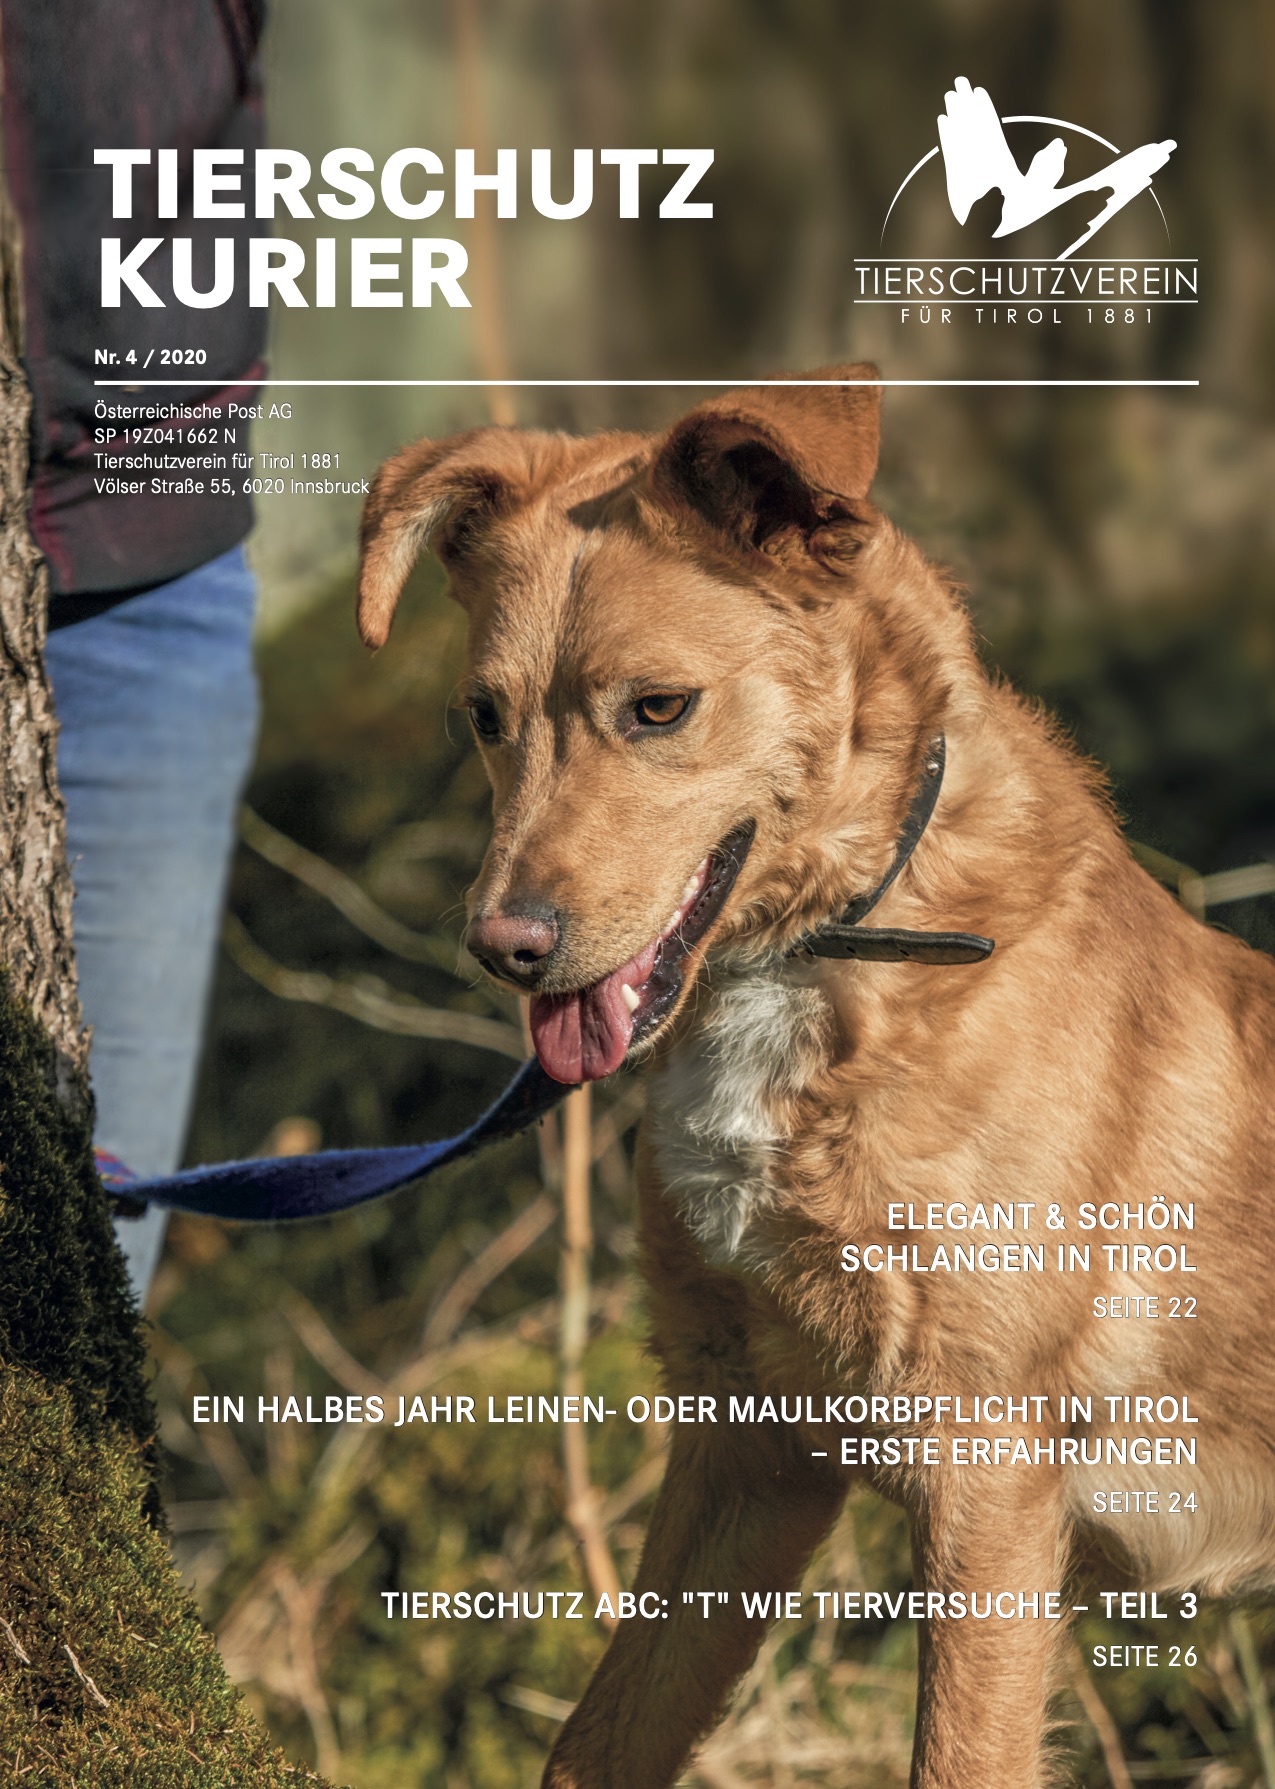 Tierschutzkurier Ausgabe 3-2018